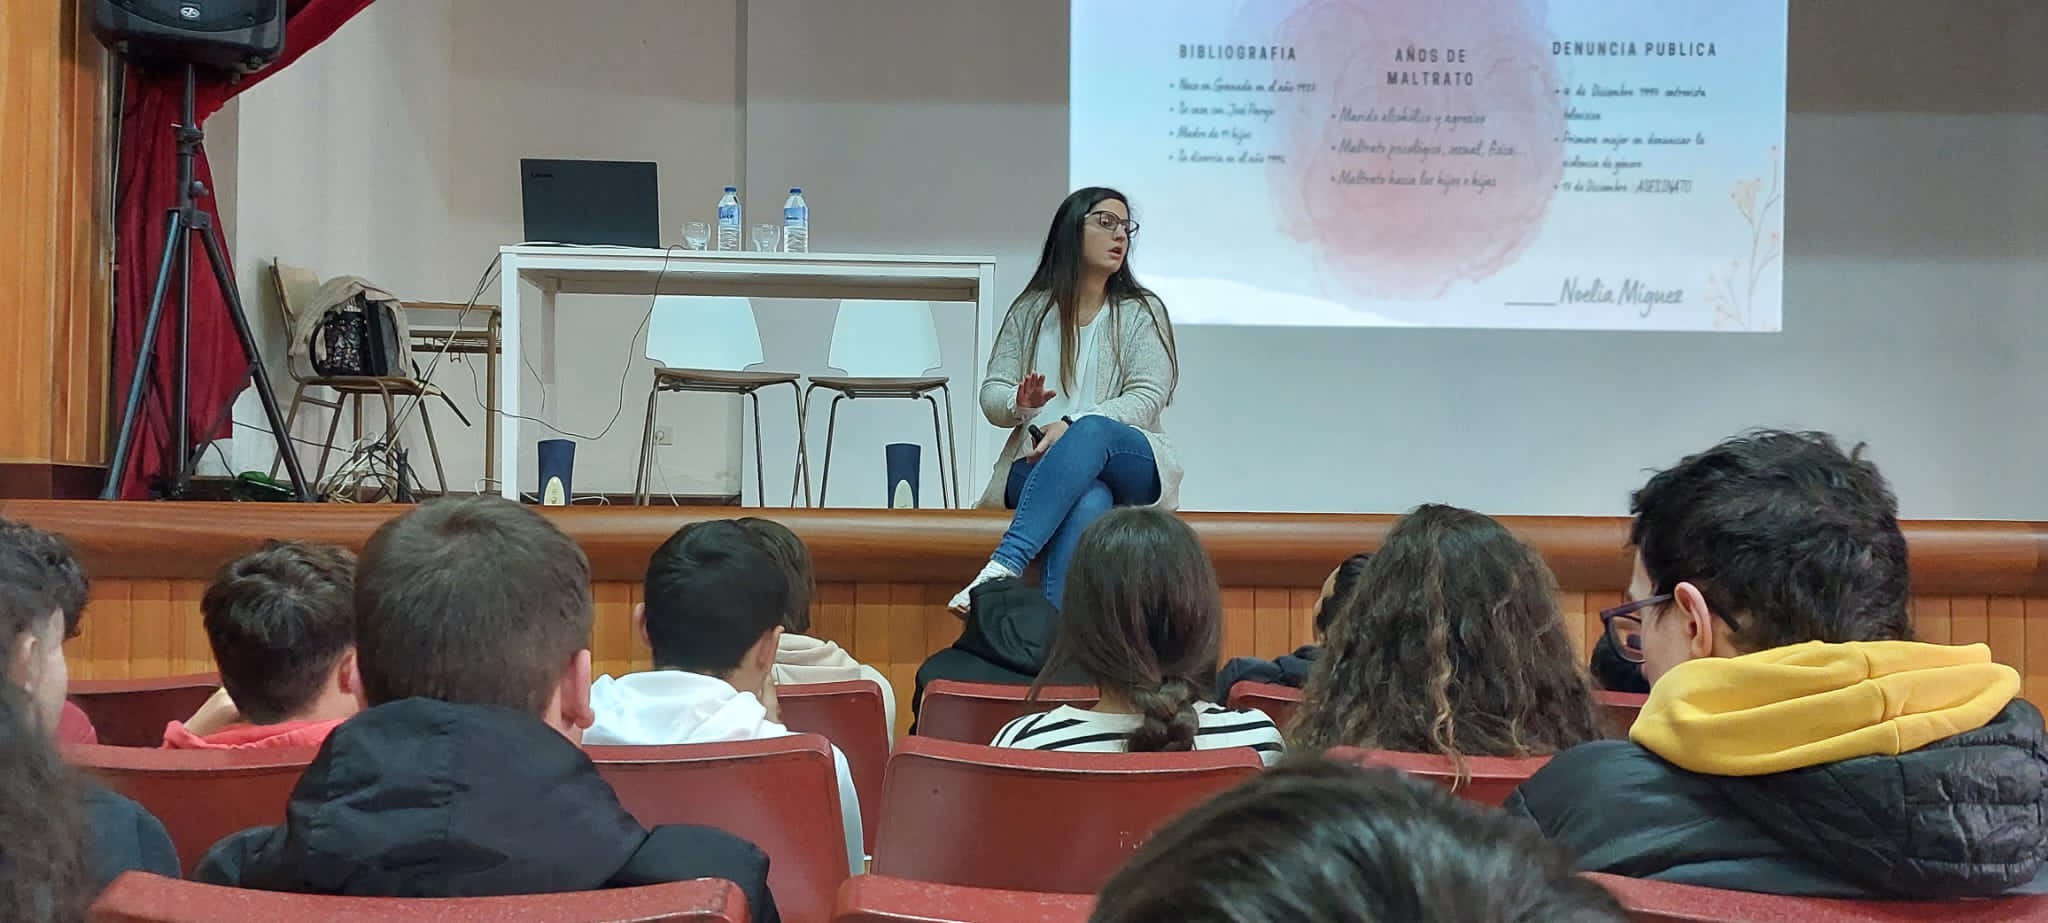 Noelia Míguez durante su charla